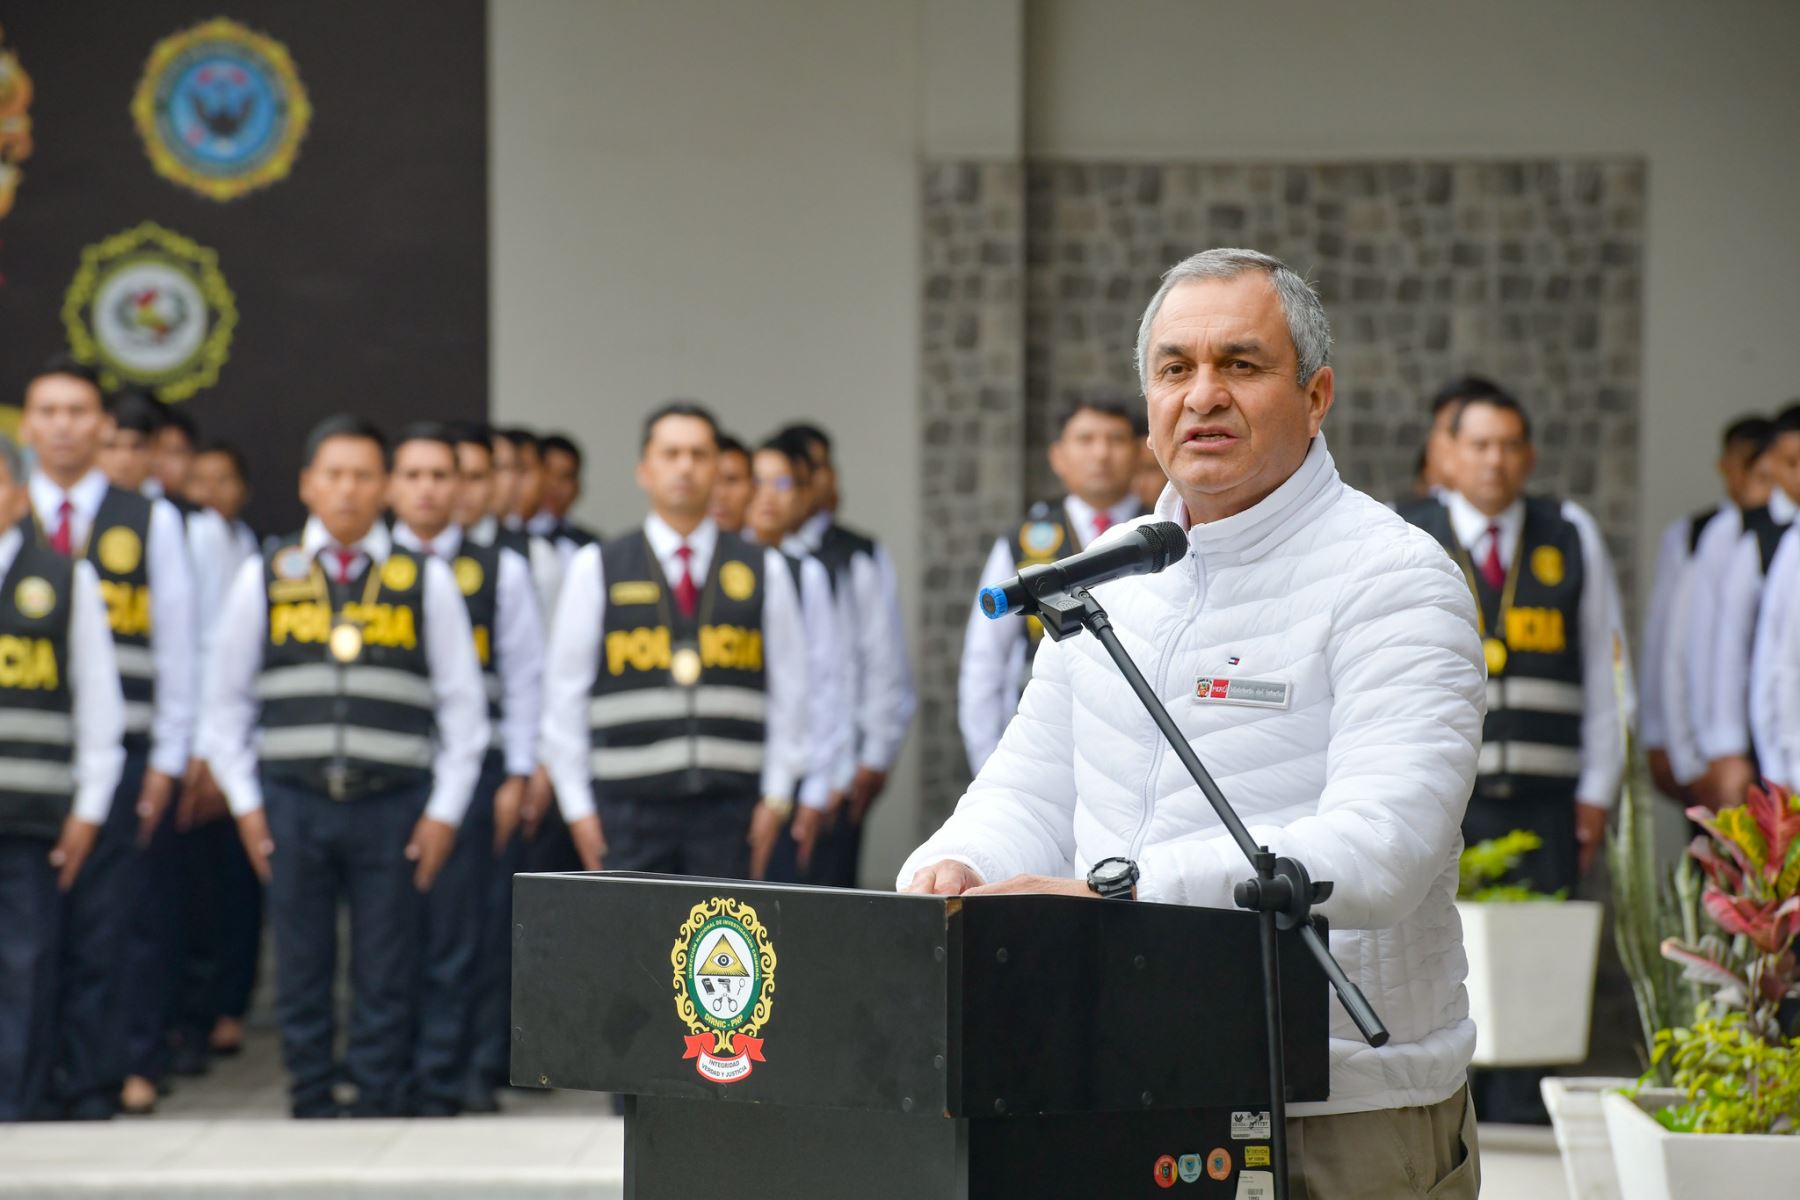 El ministro del Interior, Vicente Romero Fernández, participó hoy en la inauguración de 15 cursos de capacitación en investigación criminal que serán dirigidos a 420 efectivos de la Policía Nacional del Perú.
Foto: ANDINA/Mininter